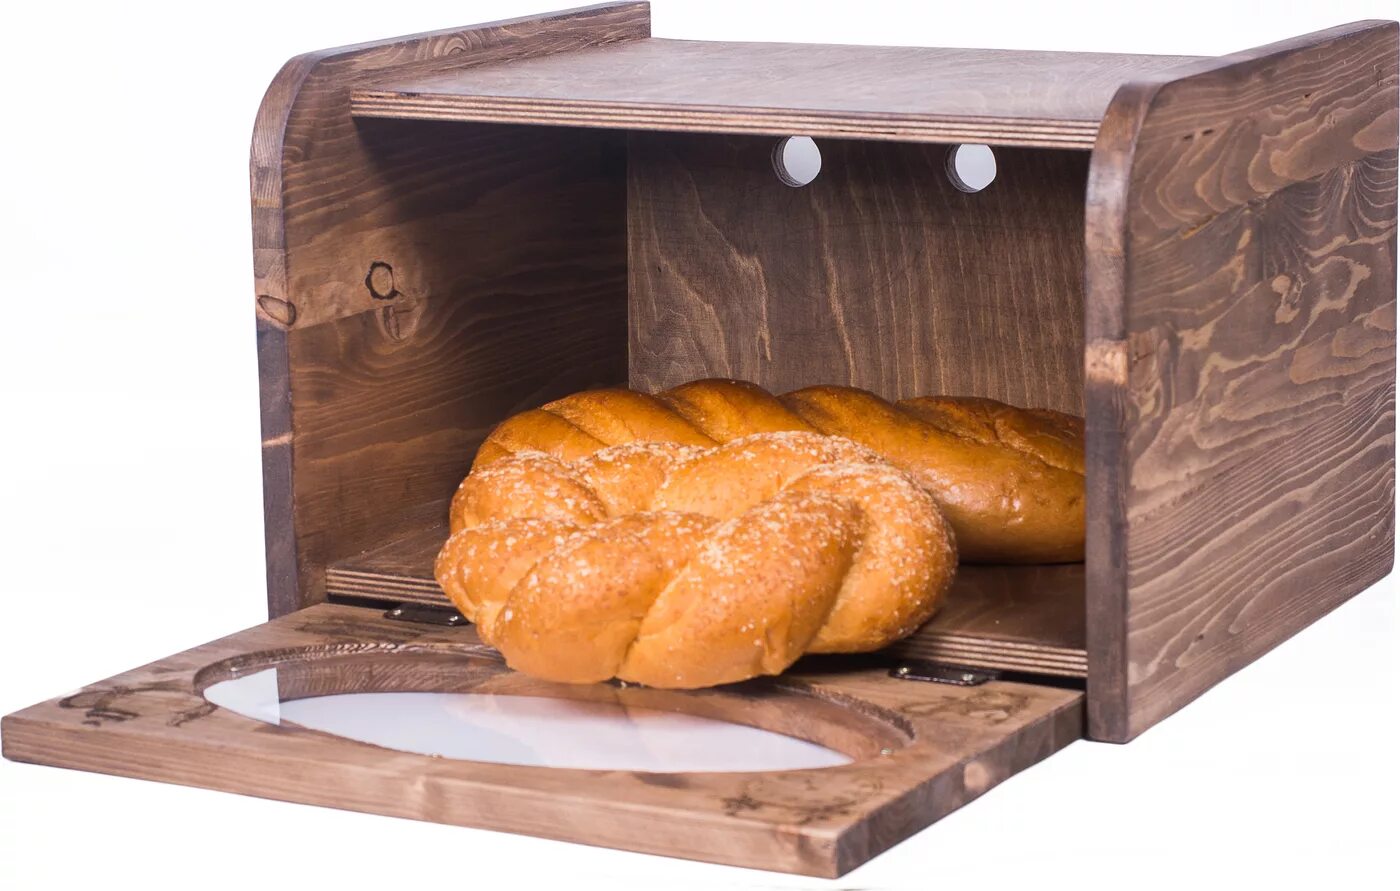 Купить хлебницы от производителя. Хлебница WR-8008. Хлебница Бекер железная. Хлебница деревянная арт д05. Хлебница большая 585х425х480 1480.